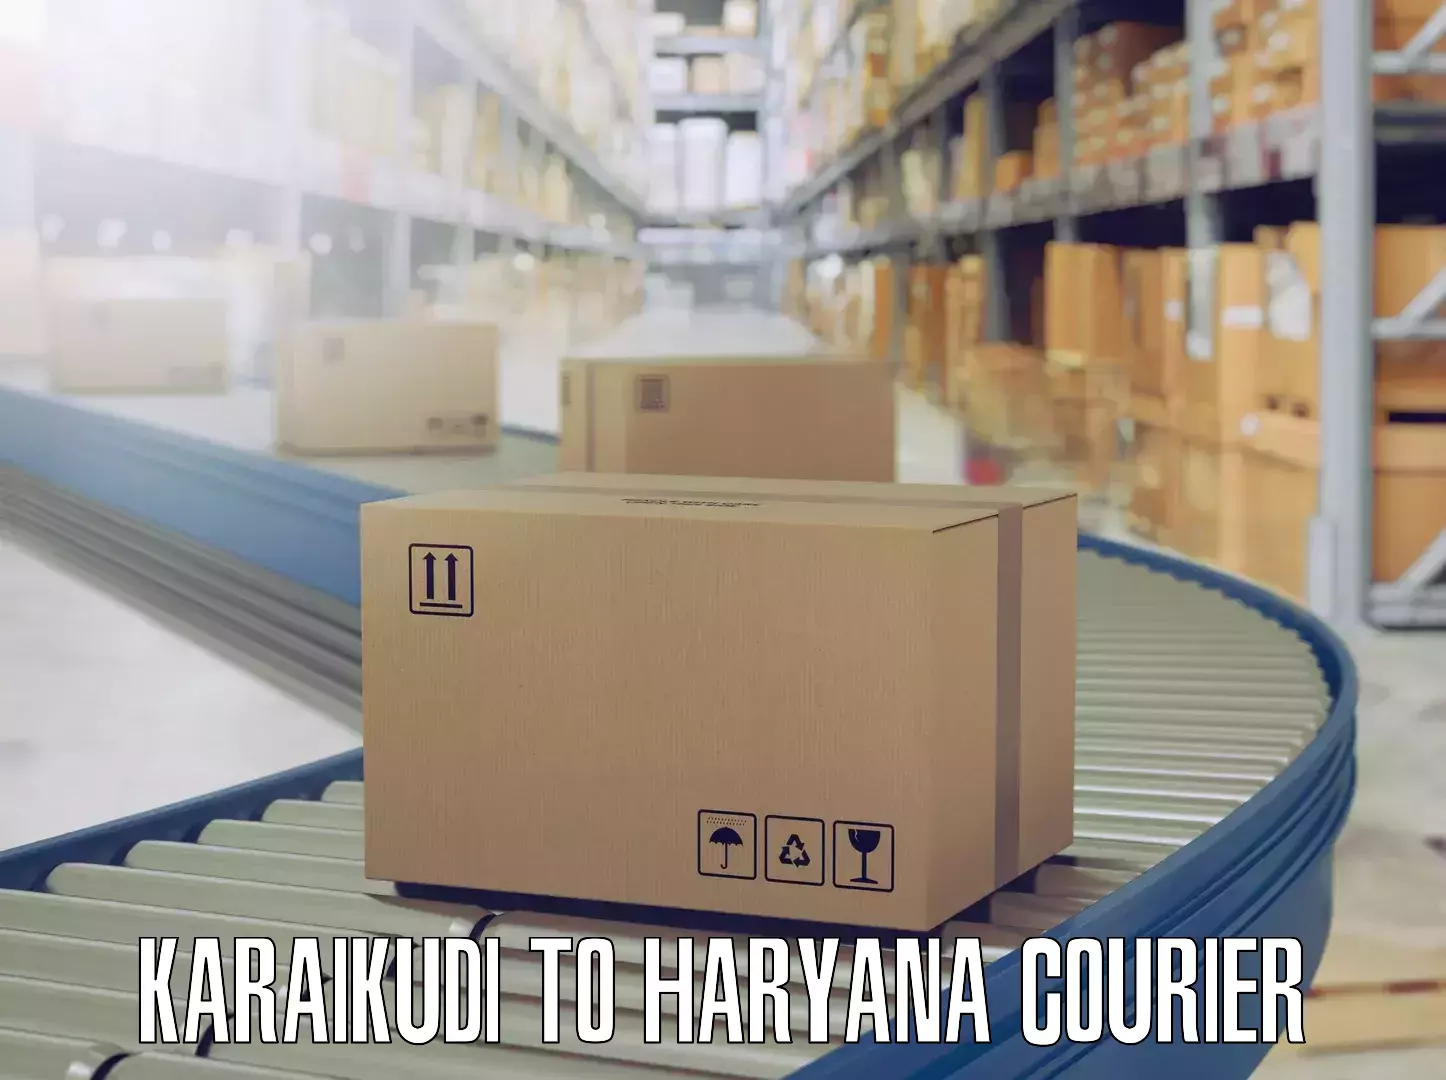 Moving and handling services Karaikudi to Bilaspur Haryana